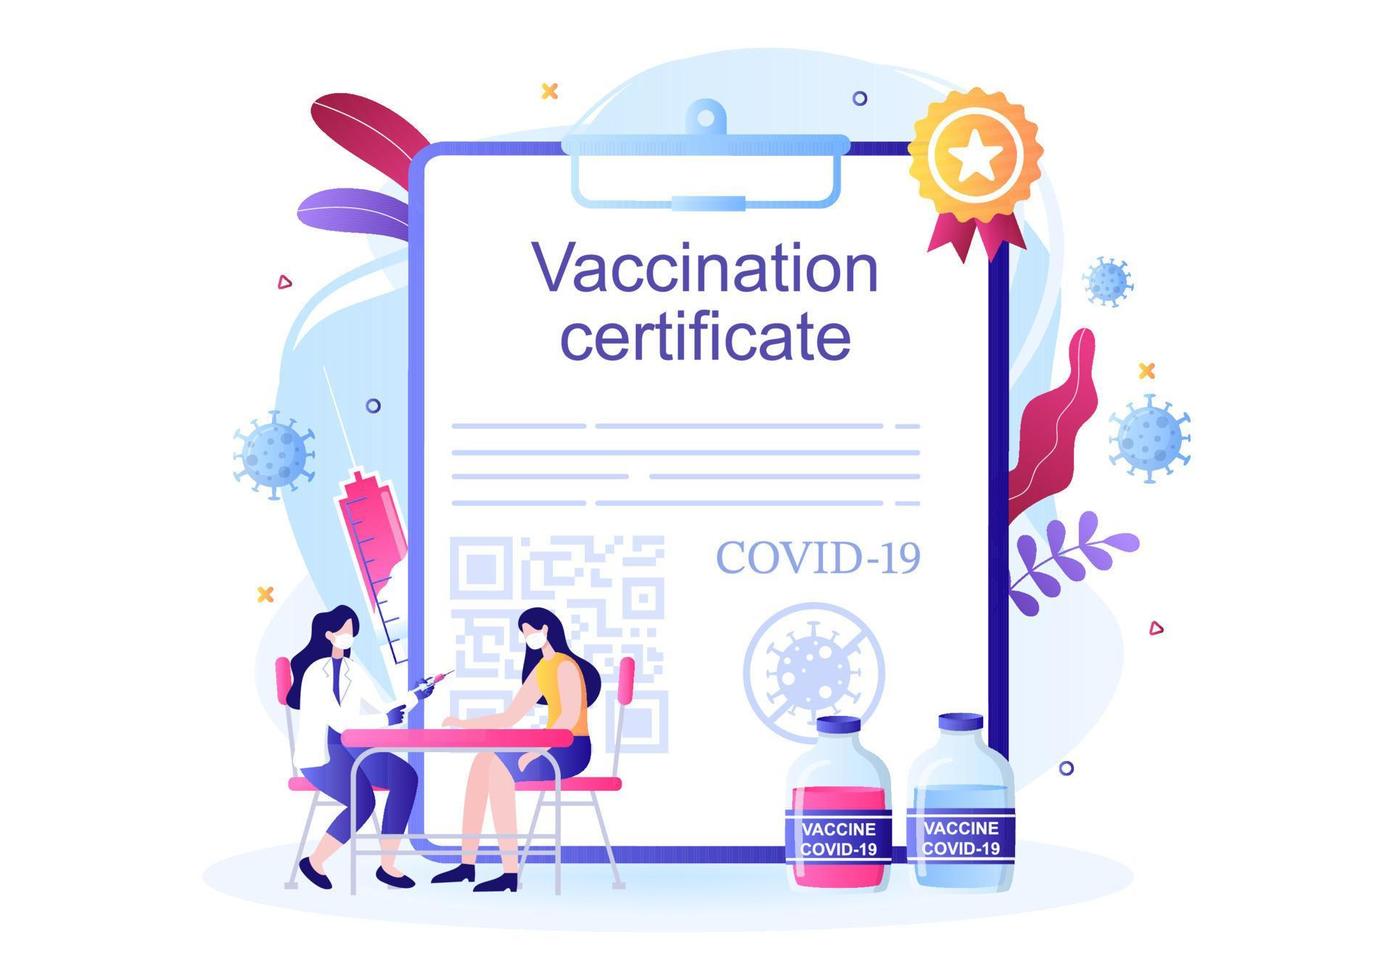 icône de certificat de vaccination covid-19 avec un document comme preuve d'être vacciné sous la forme d'une carte ou d'un scan sur un smartphone. illustration vectorielle de fond vecteur